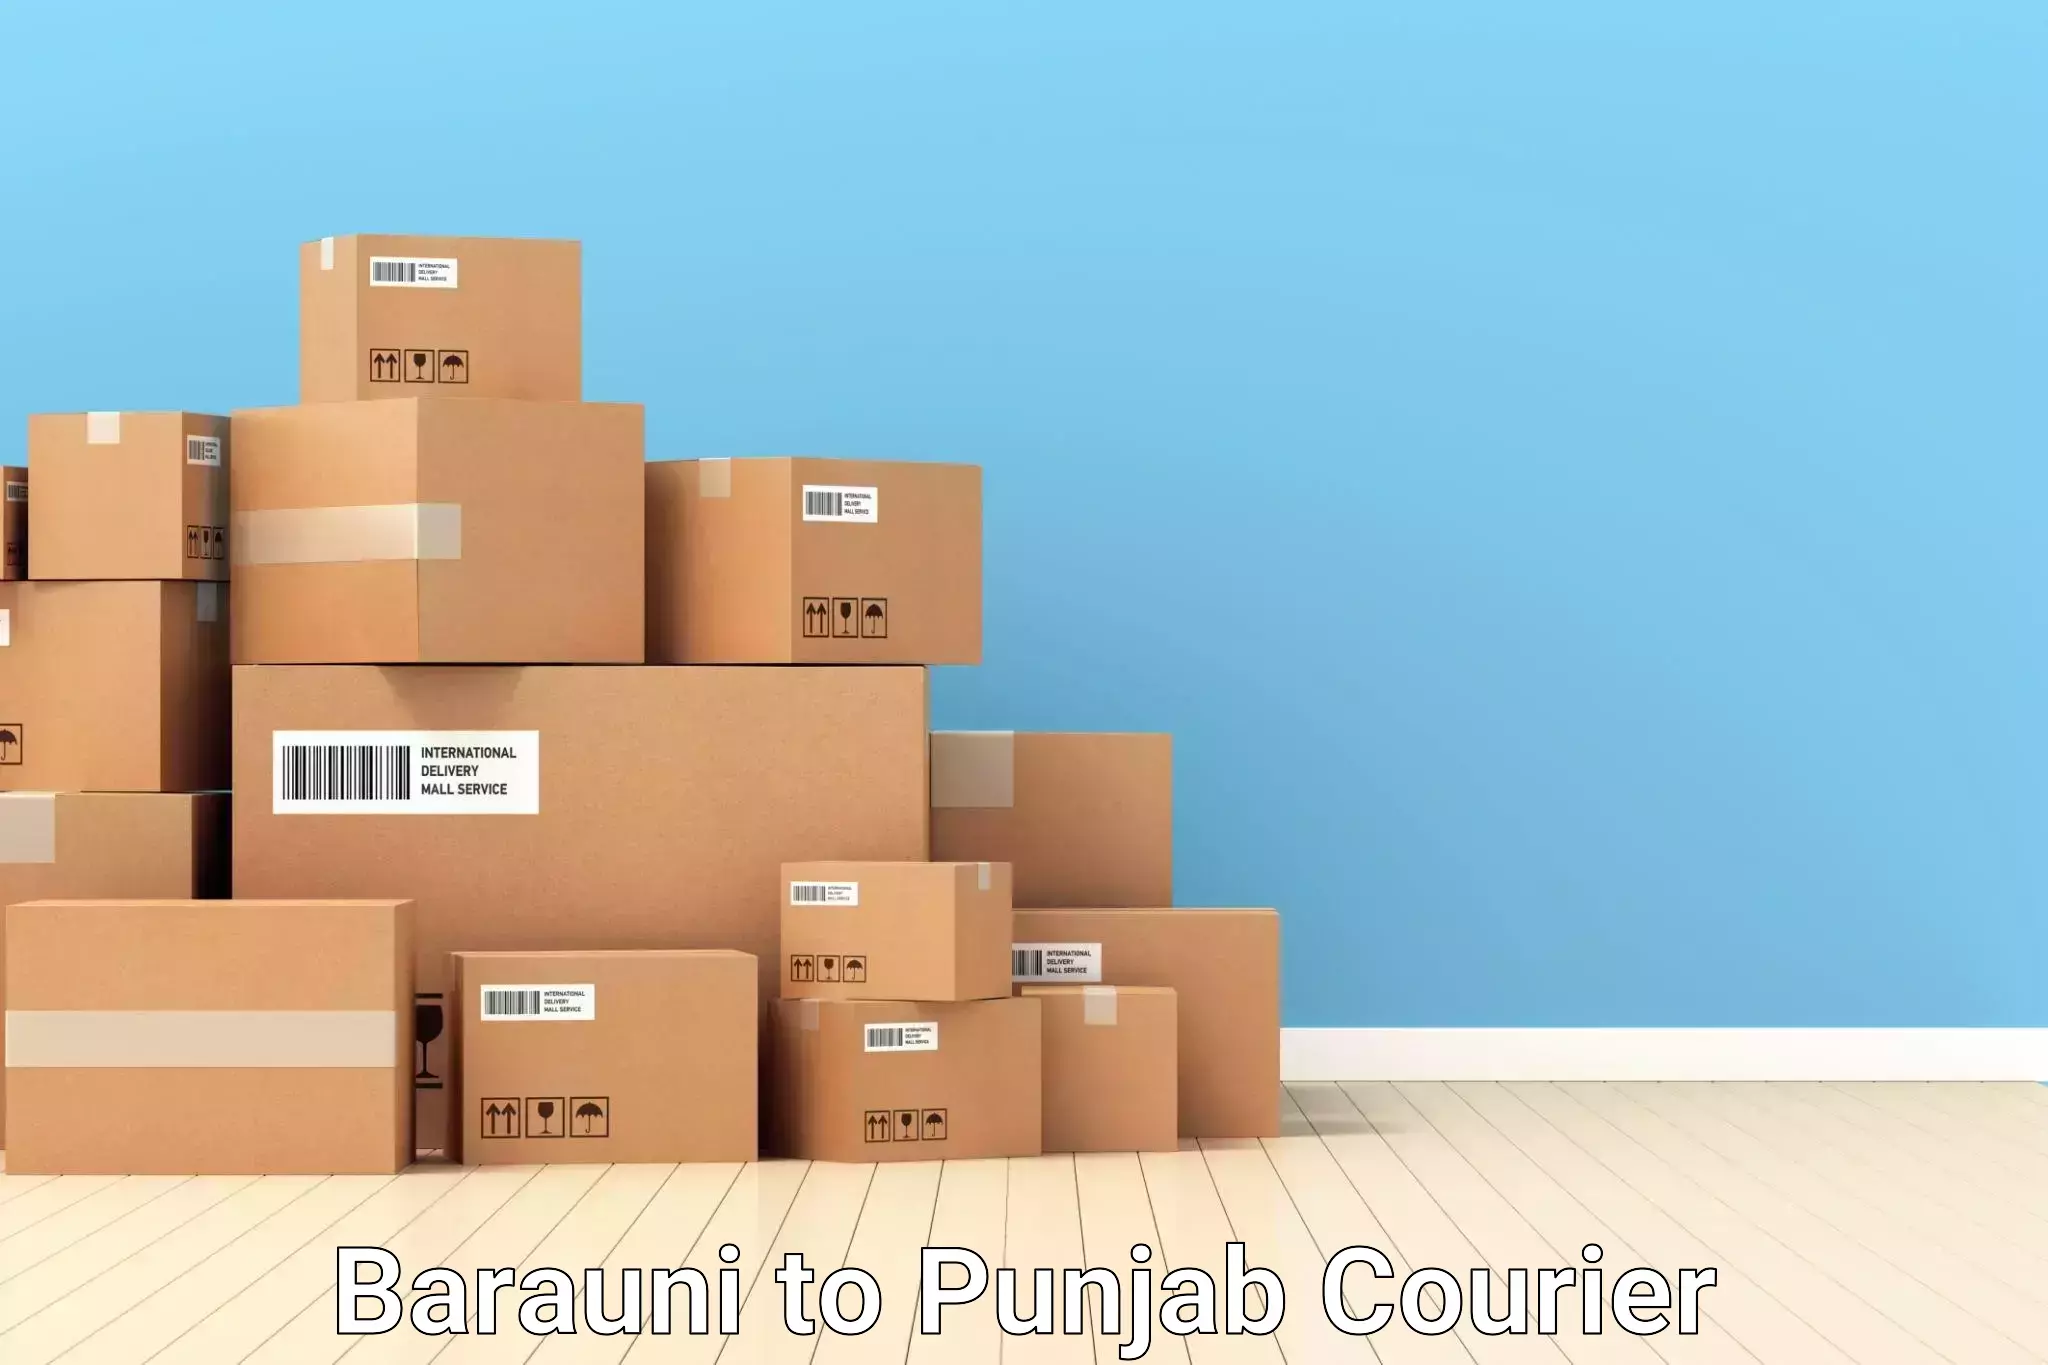 Luggage shipment tracking Barauni to Mohali